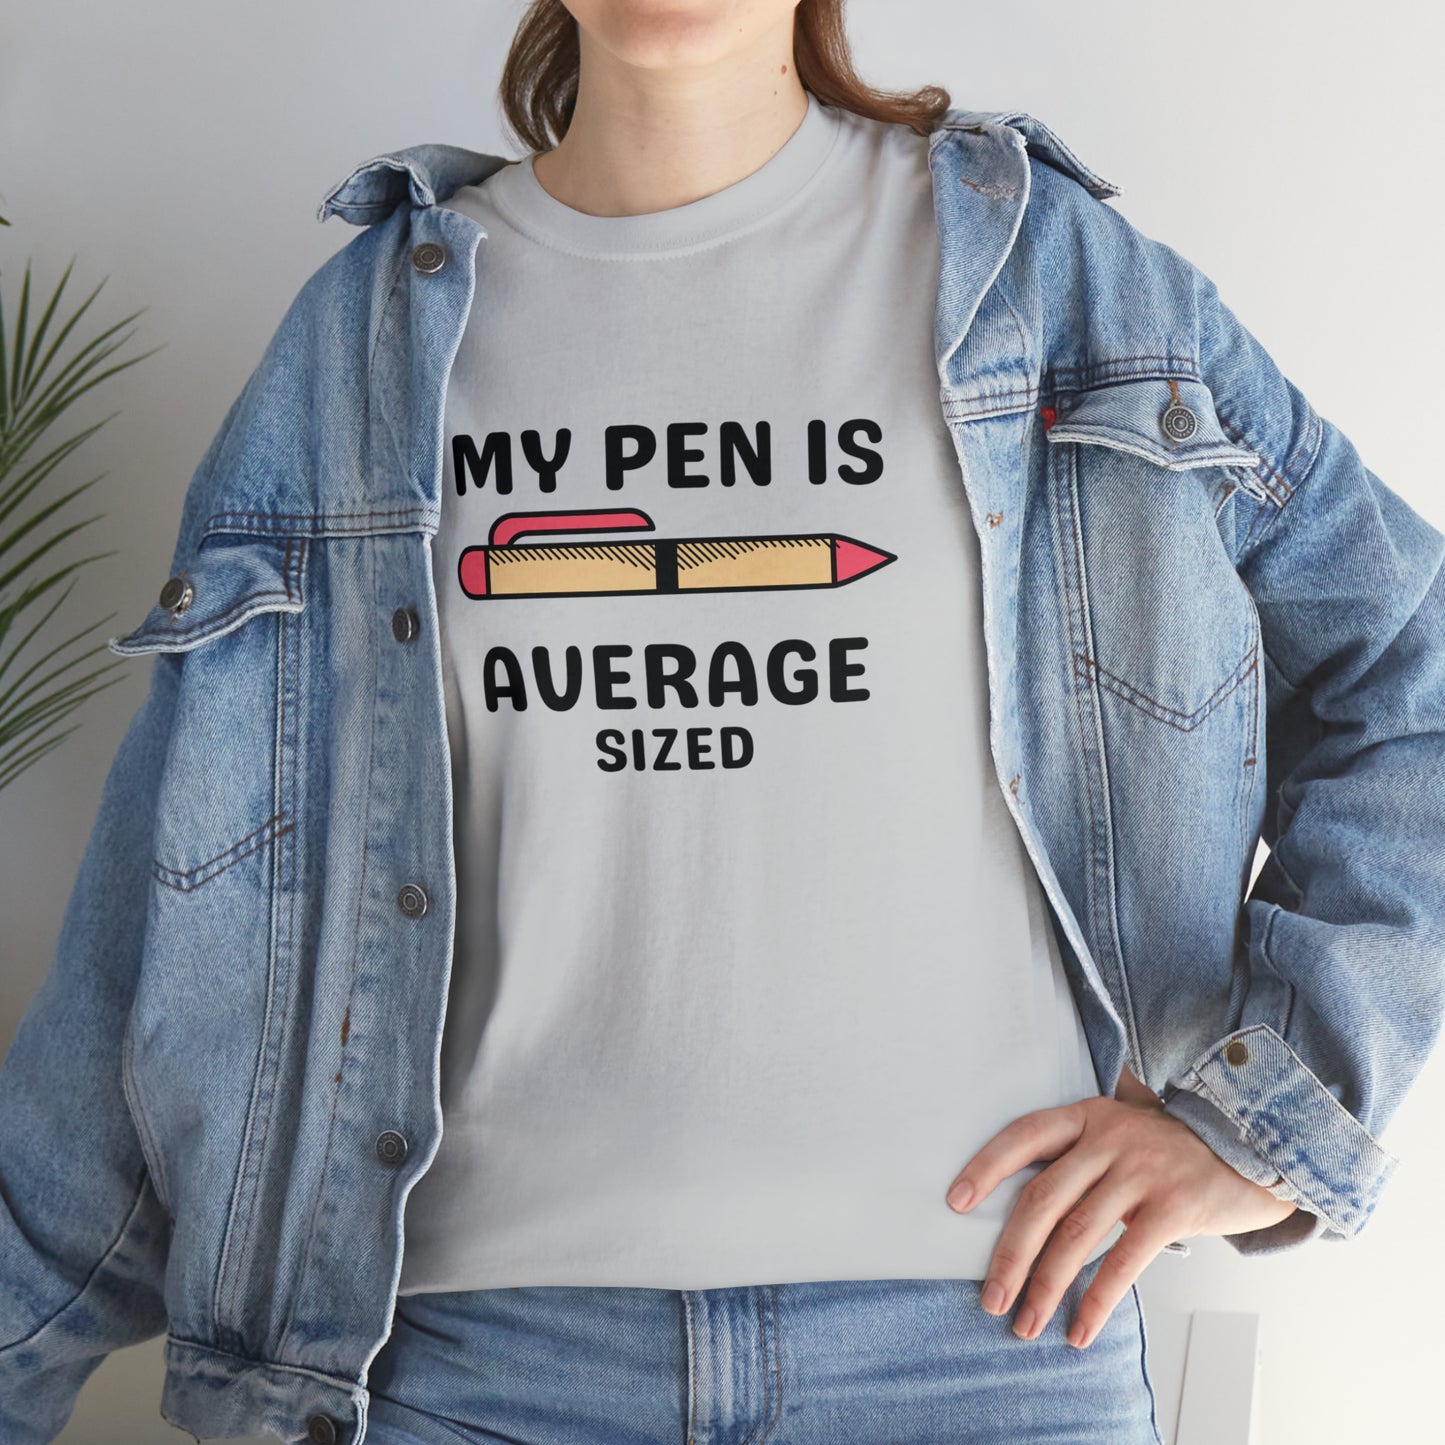 Pen Is Average T-shirt